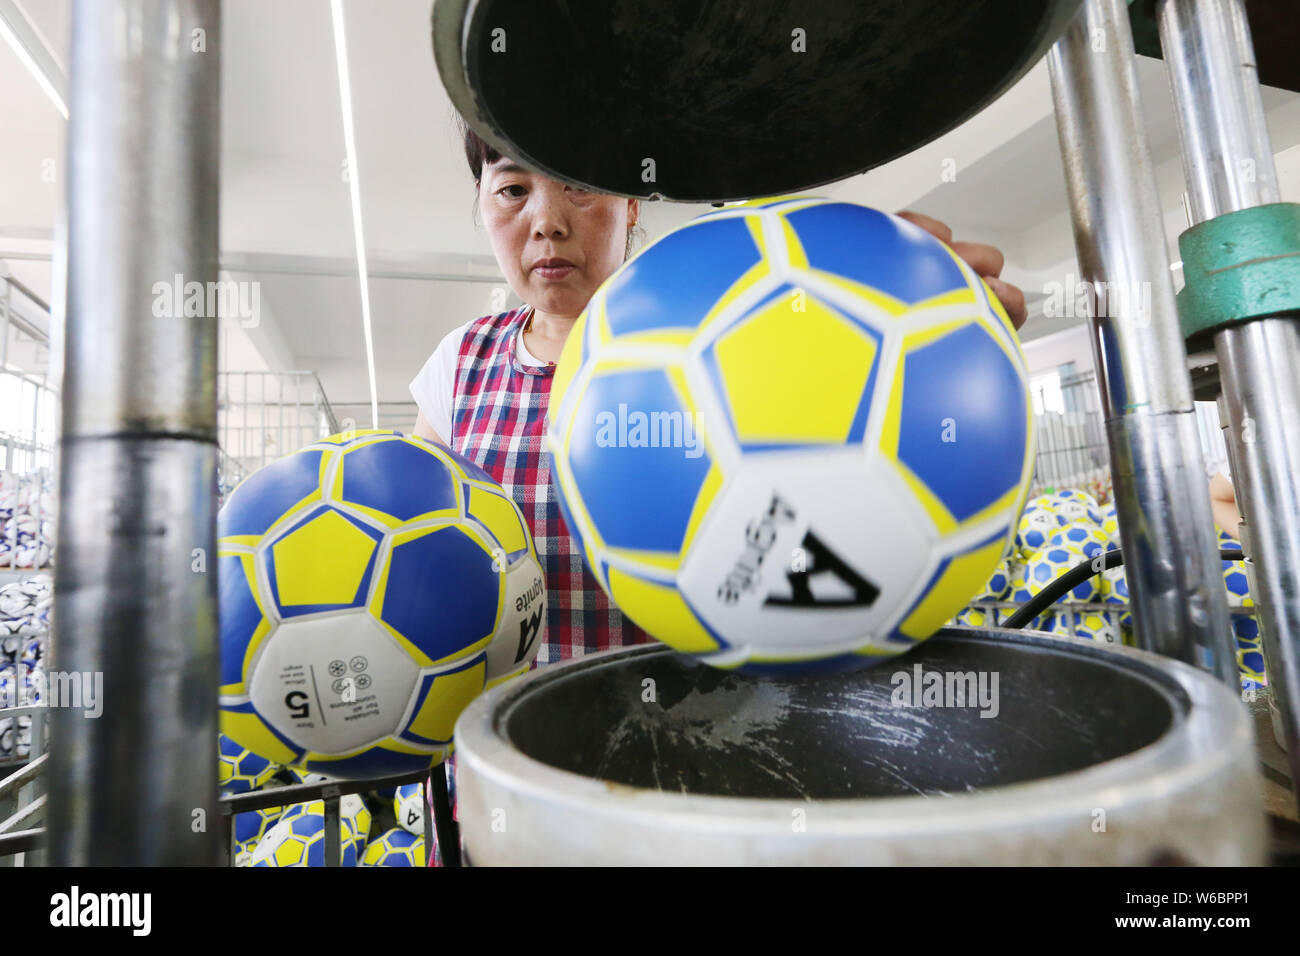 Les travailleurs chinois de la fabrication de ballons de football pour la  Coupe du Monde FIFA 2018 à l'usine d'une entreprise d'articles de sport  dans la ville, de l'Est Chine Haimen Jiangsu